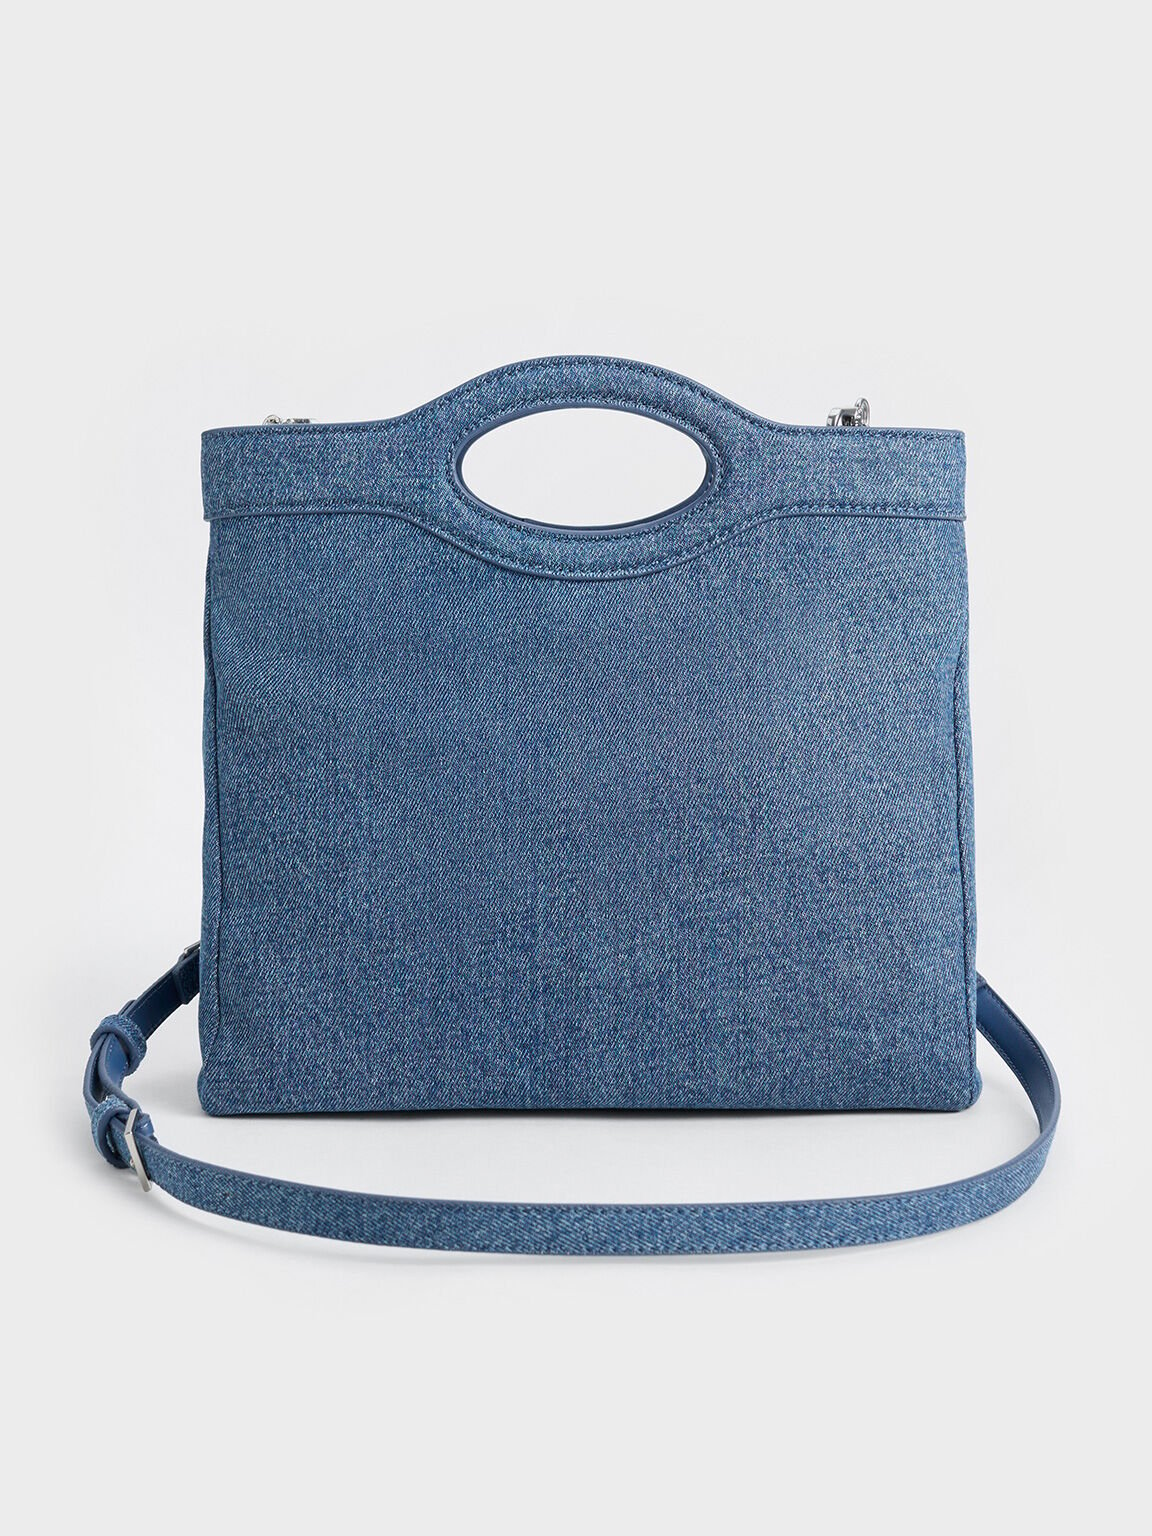 Arwen Denim Curved-Handle Bag, Denim Blue, hi-res